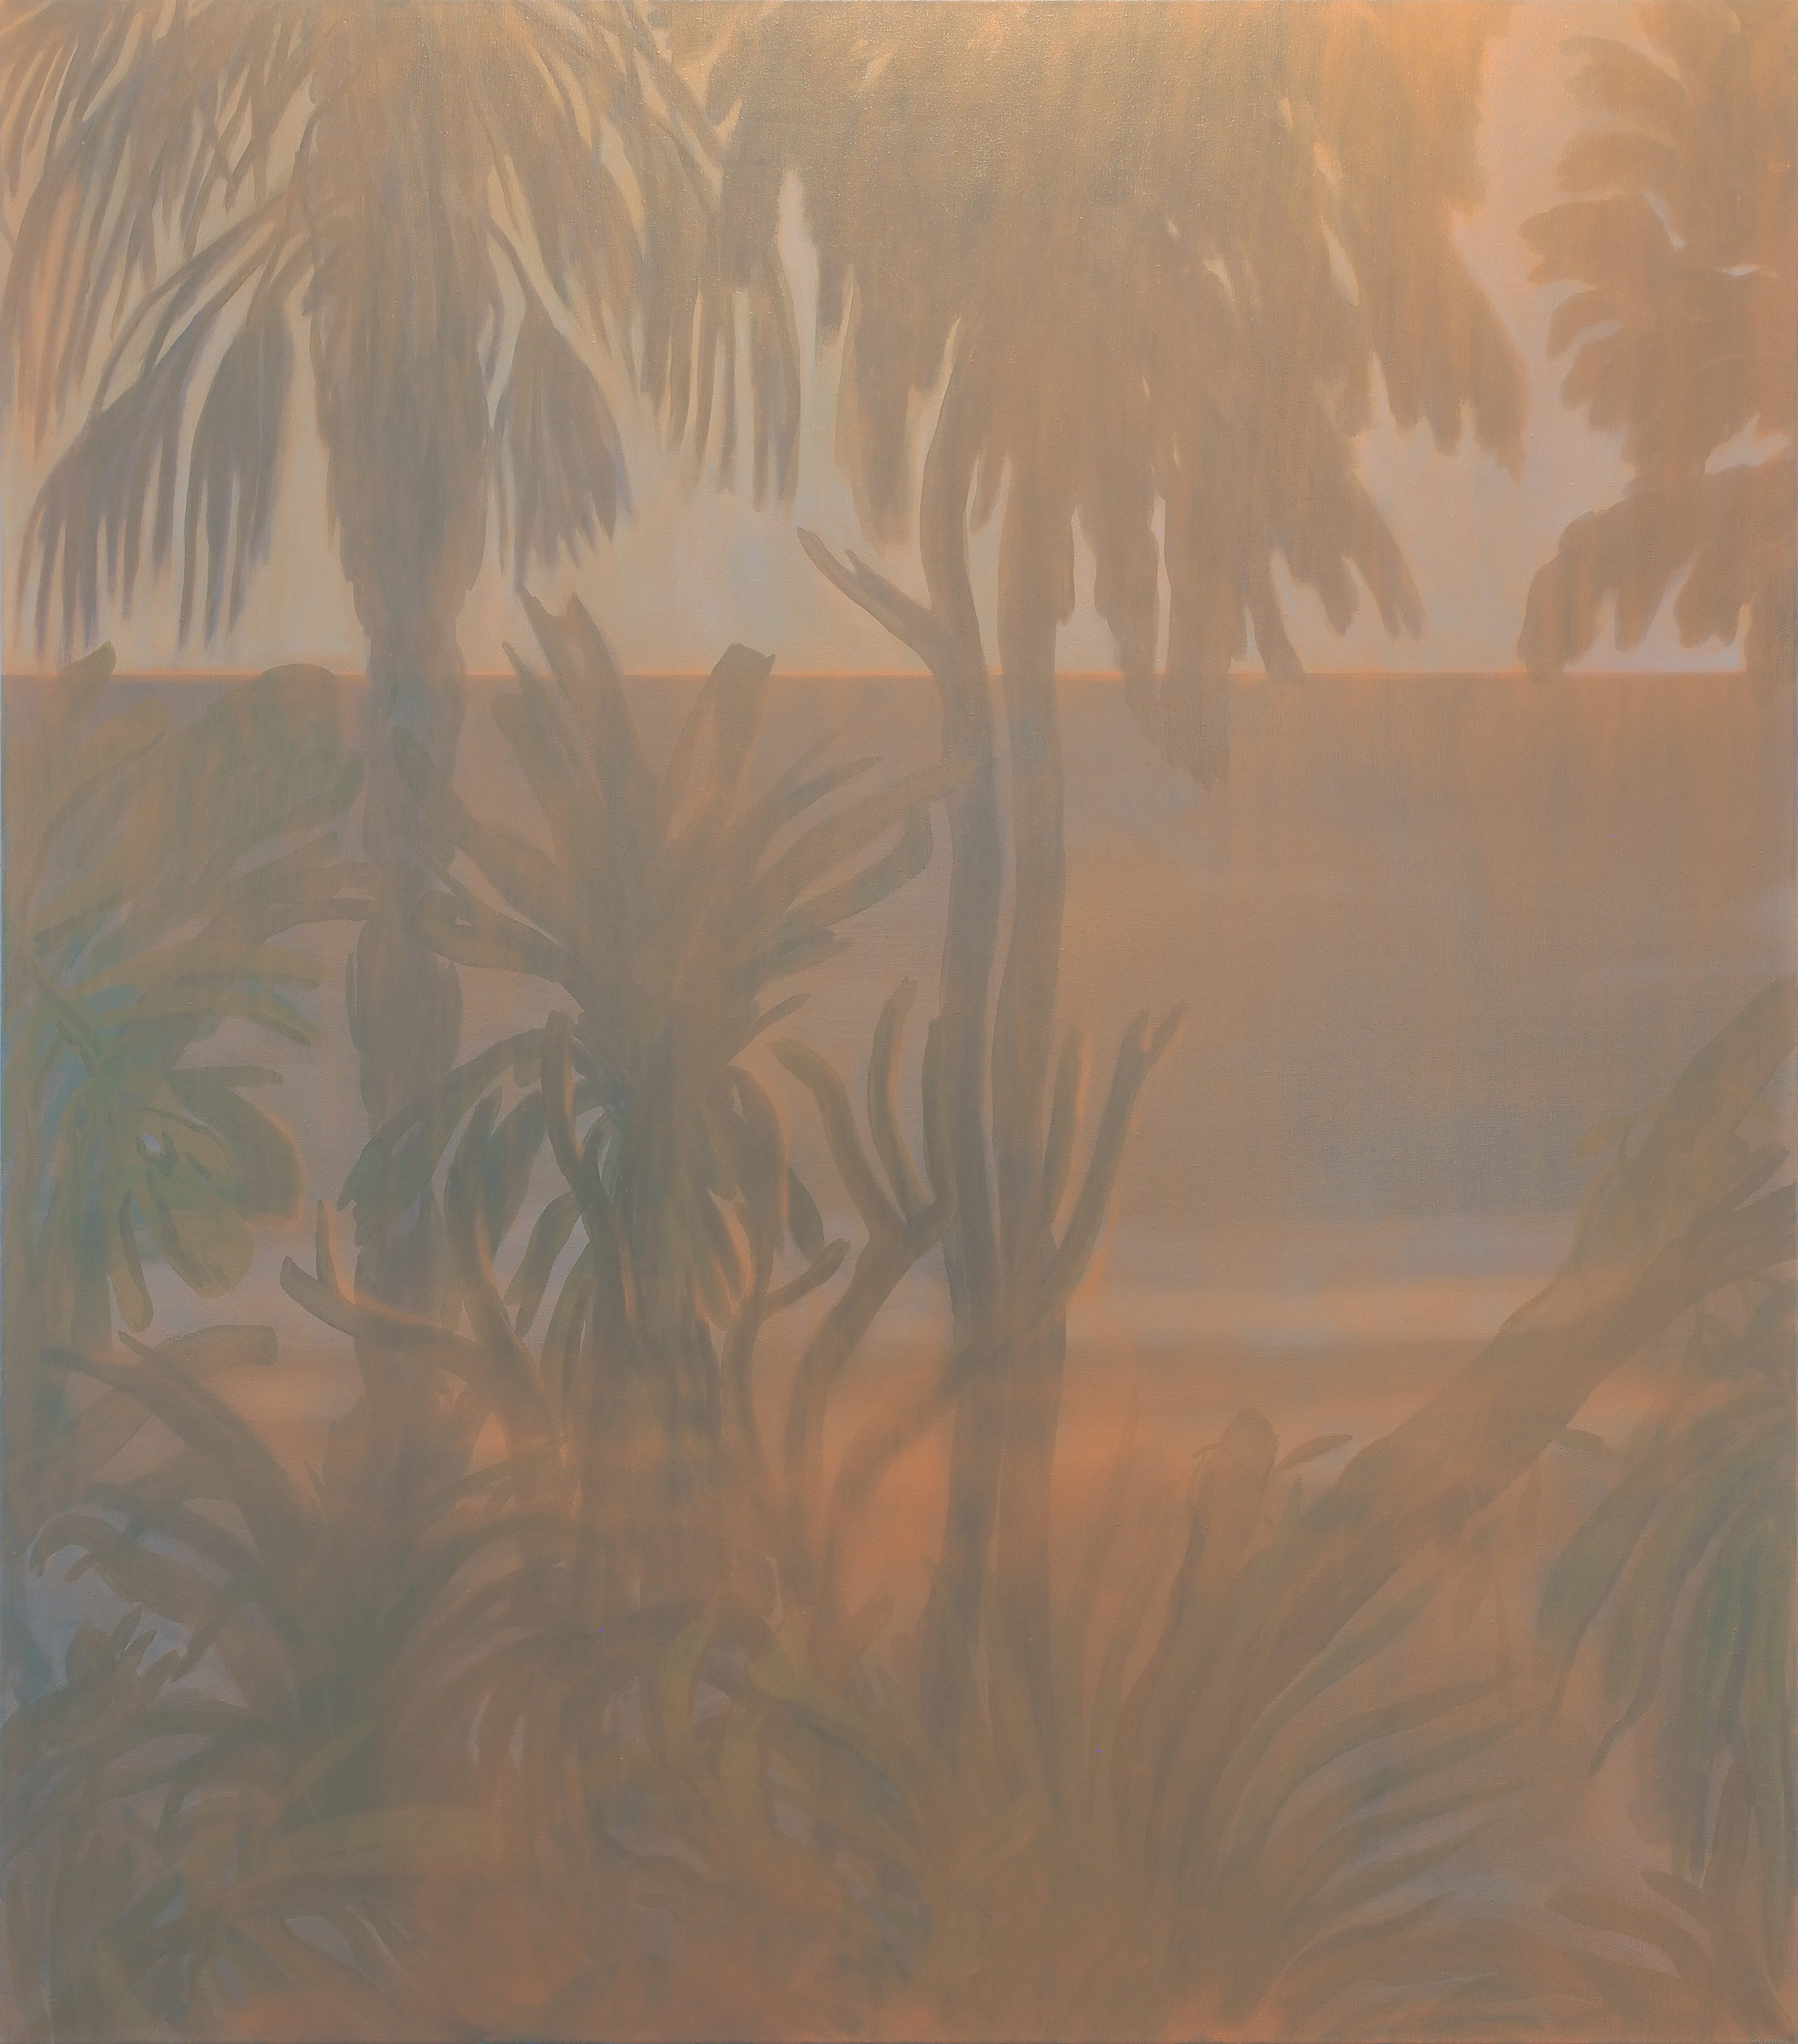 Martin Solymar, "Red Dawn", 2016, oil on canvas, 160 x 140 cm